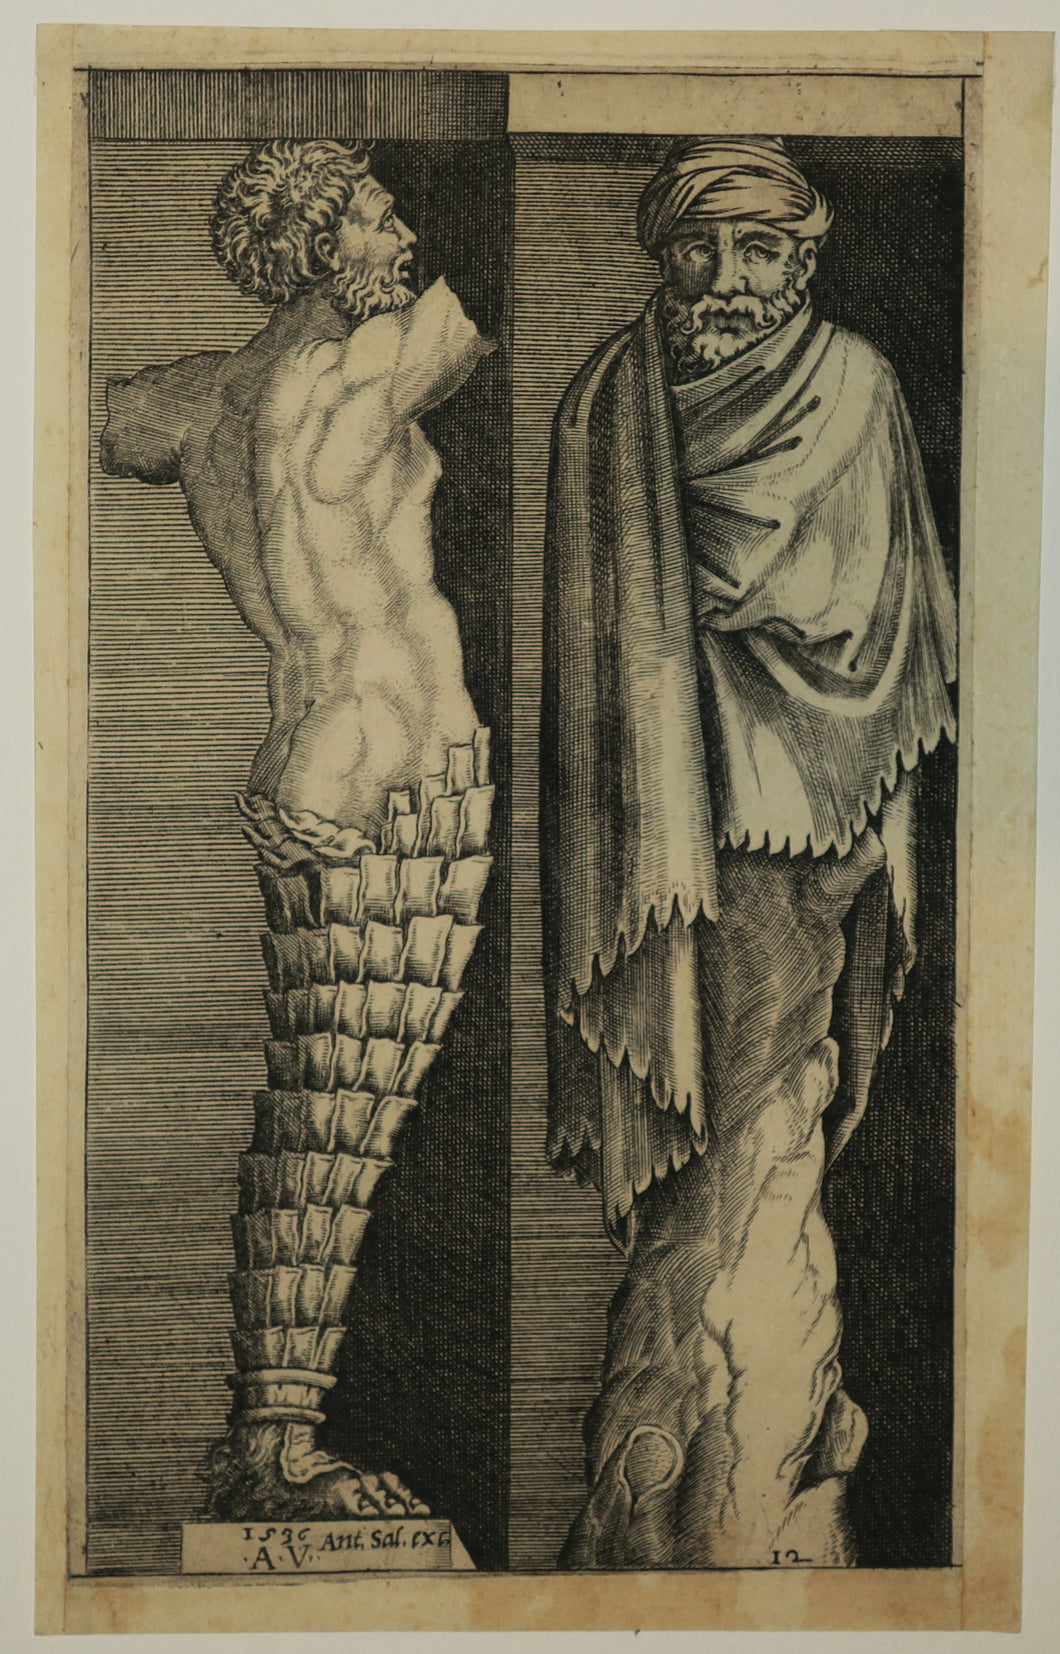 Deux termes; à gauche un torse nu masculin qui ressemble à un tronc de palmier de la cuisse vers le bas et à droite un homme turbané et masqué dont les jambes sont remplacées par un tronc d'arbre. 1536.